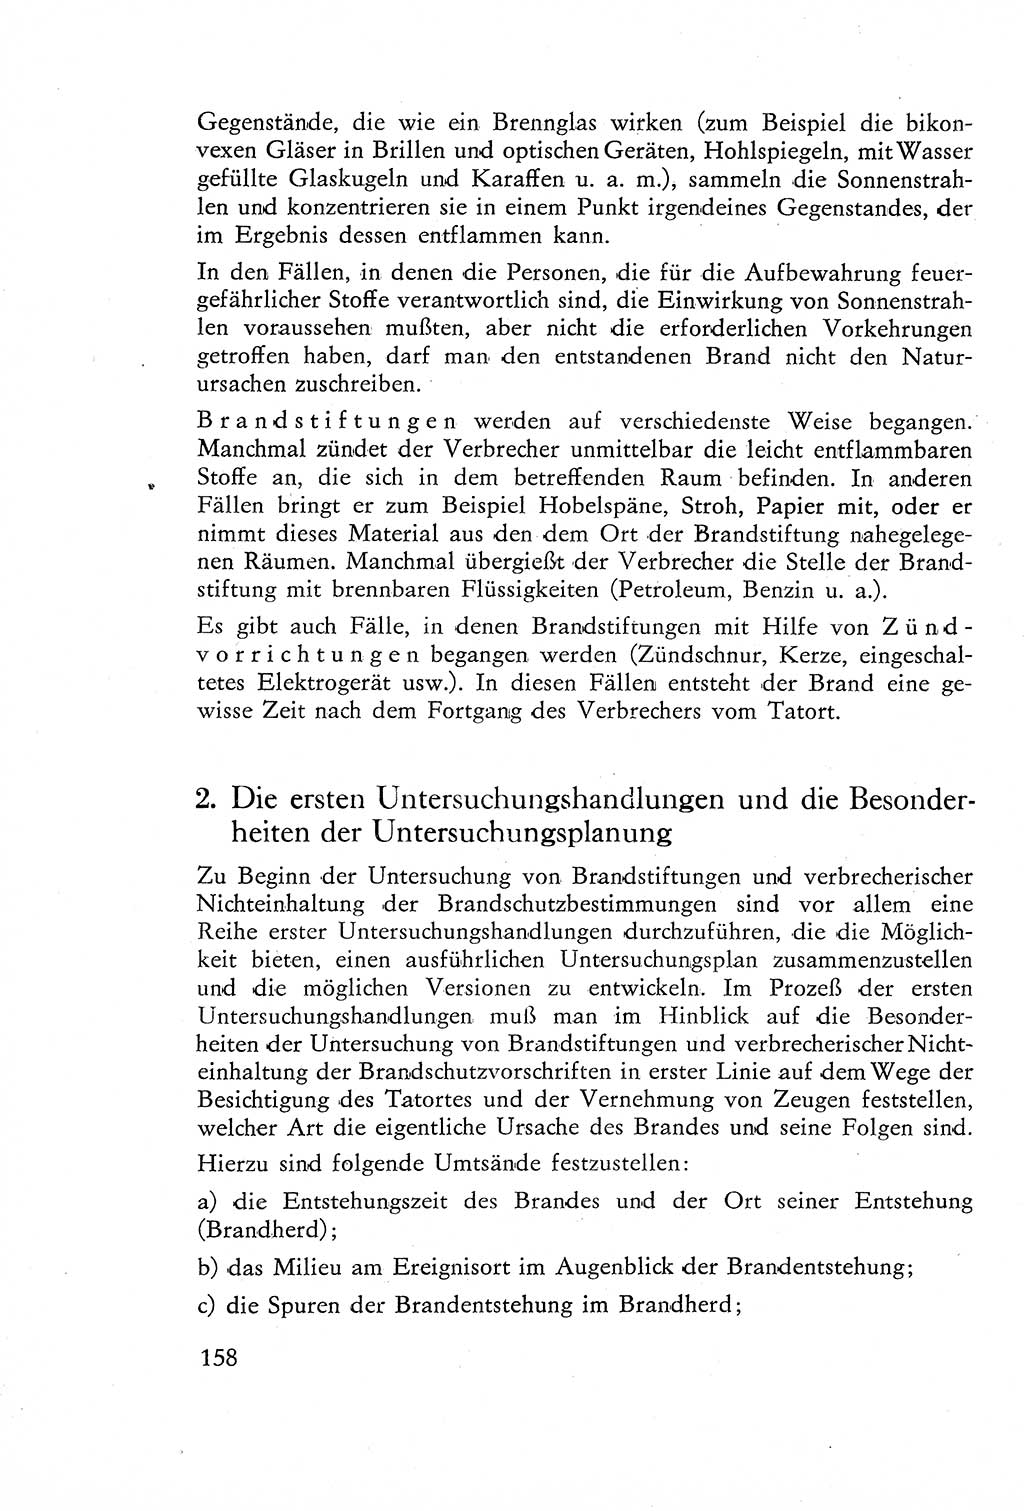 Die Untersuchung einzelner Verbrechensarten [Deutsche Demokratische Republik (DDR)] 1960, Seite 158 (Unters. Verbr.-Art. DDR 1960, S. 158)